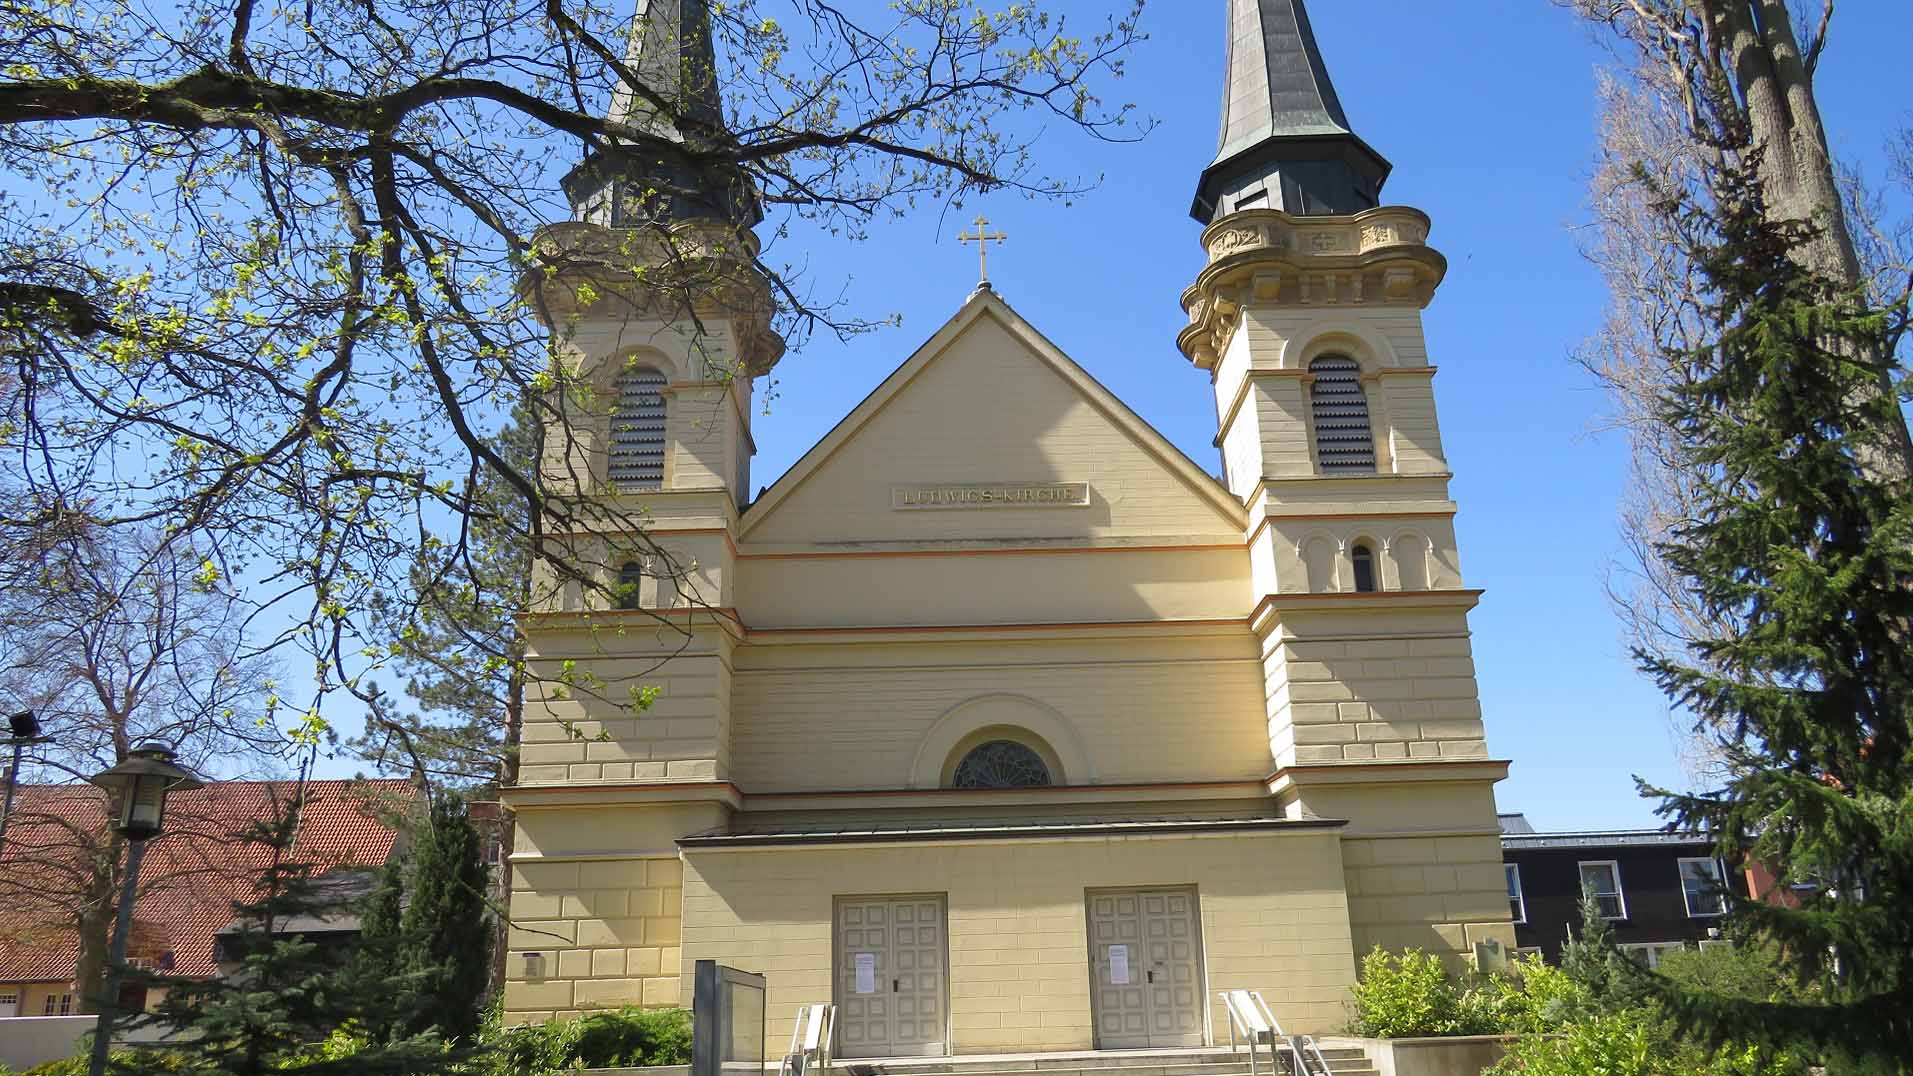 St. Ludwig Church